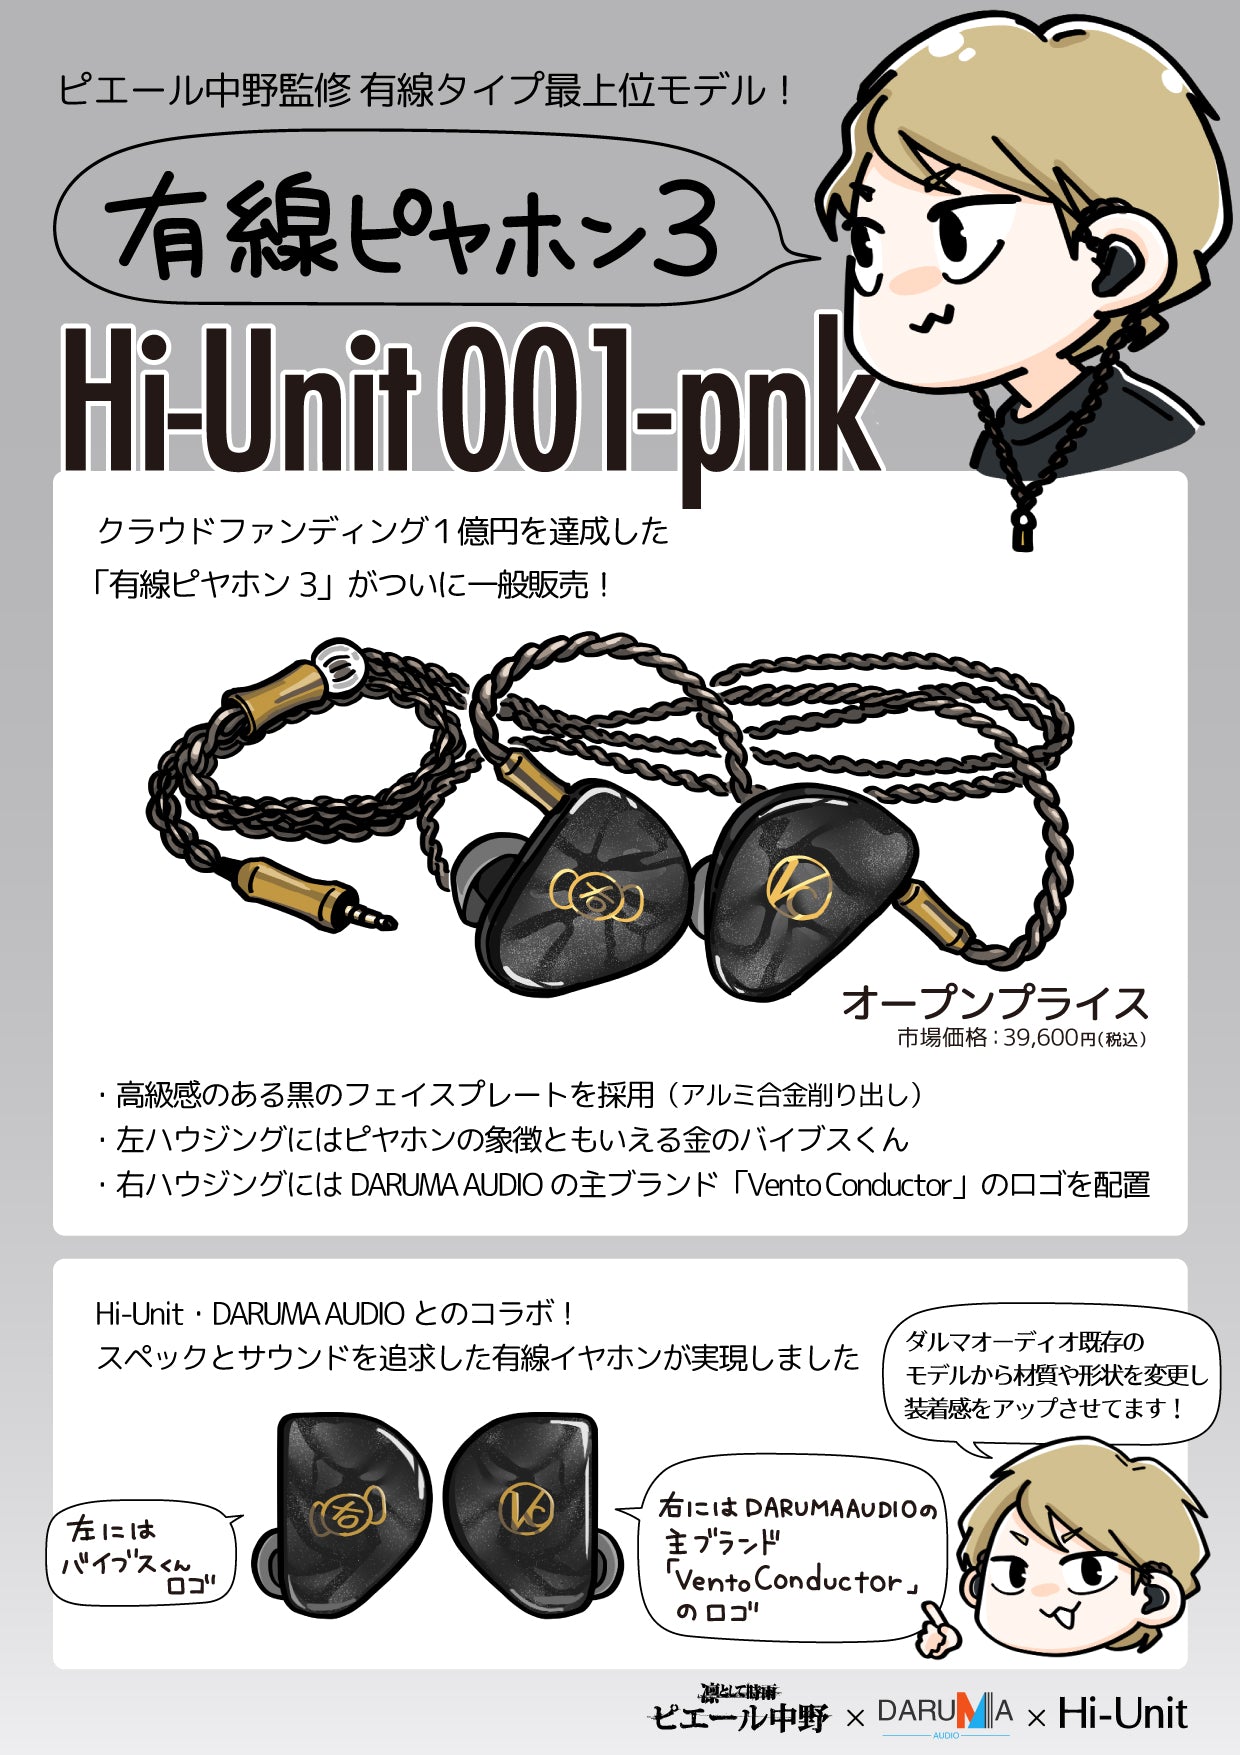 【未使用品】Hi-Unit 001-pnk有線ピヤホン3イヤホン